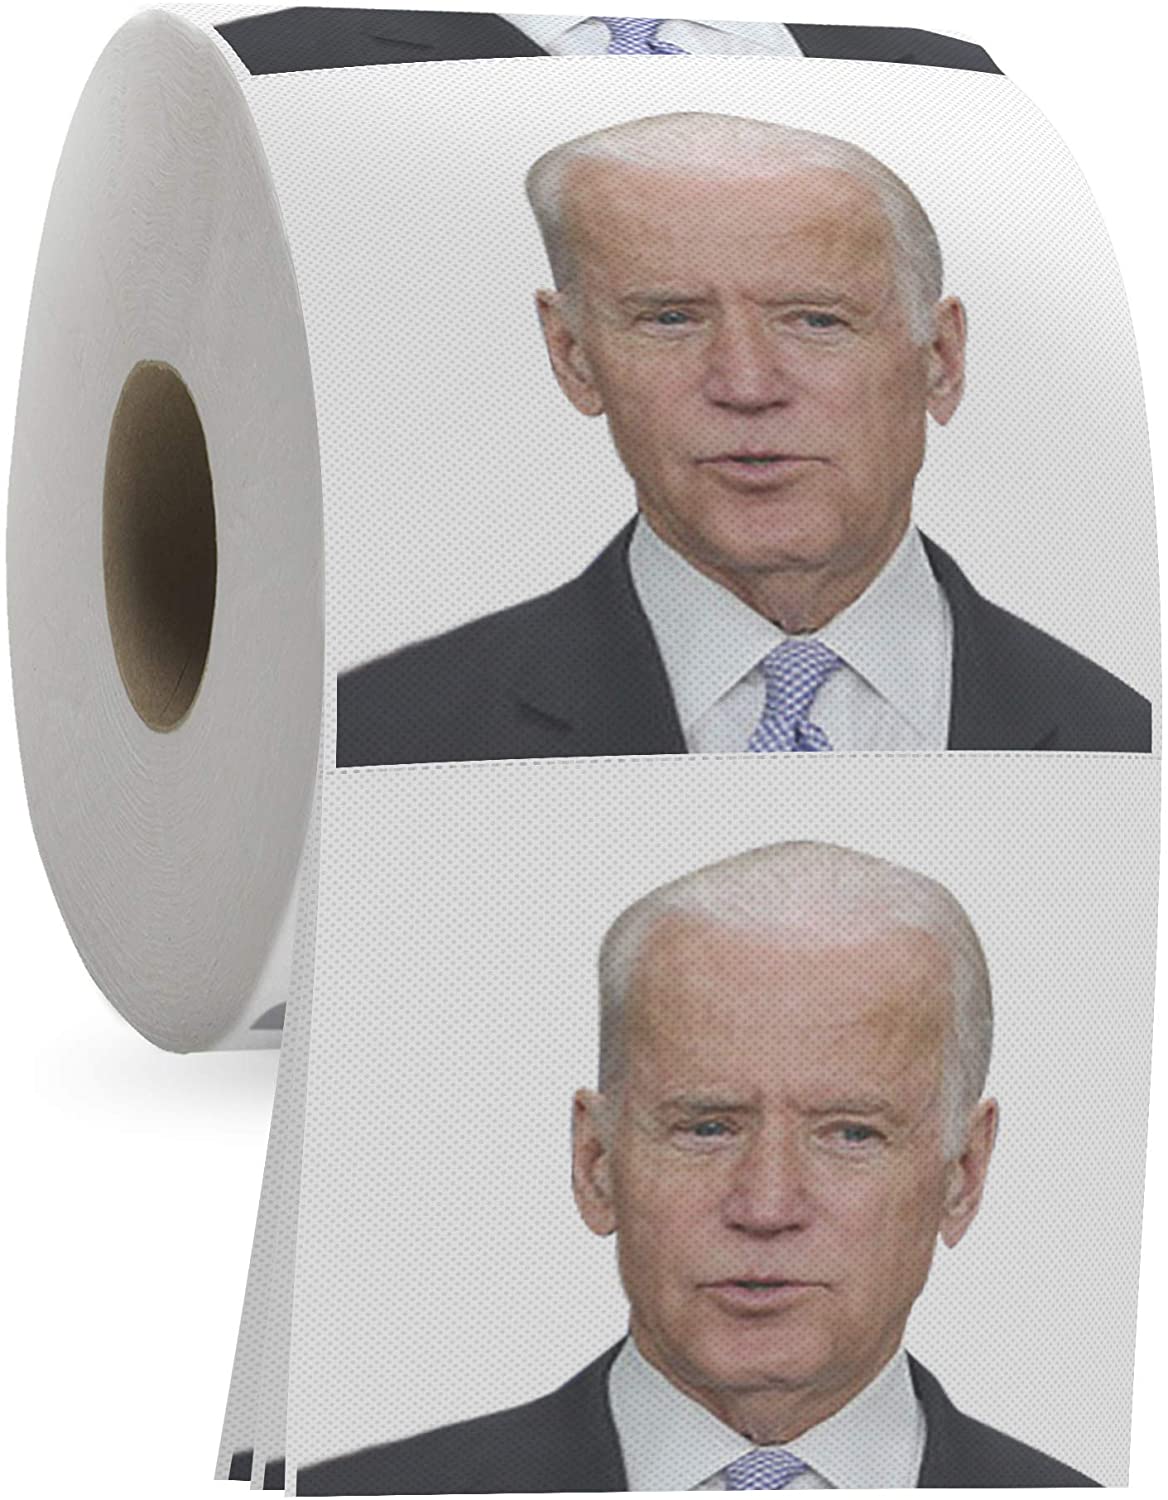 Joe Biden Funny Toilet Brush Gag Gift Toilet Liberal